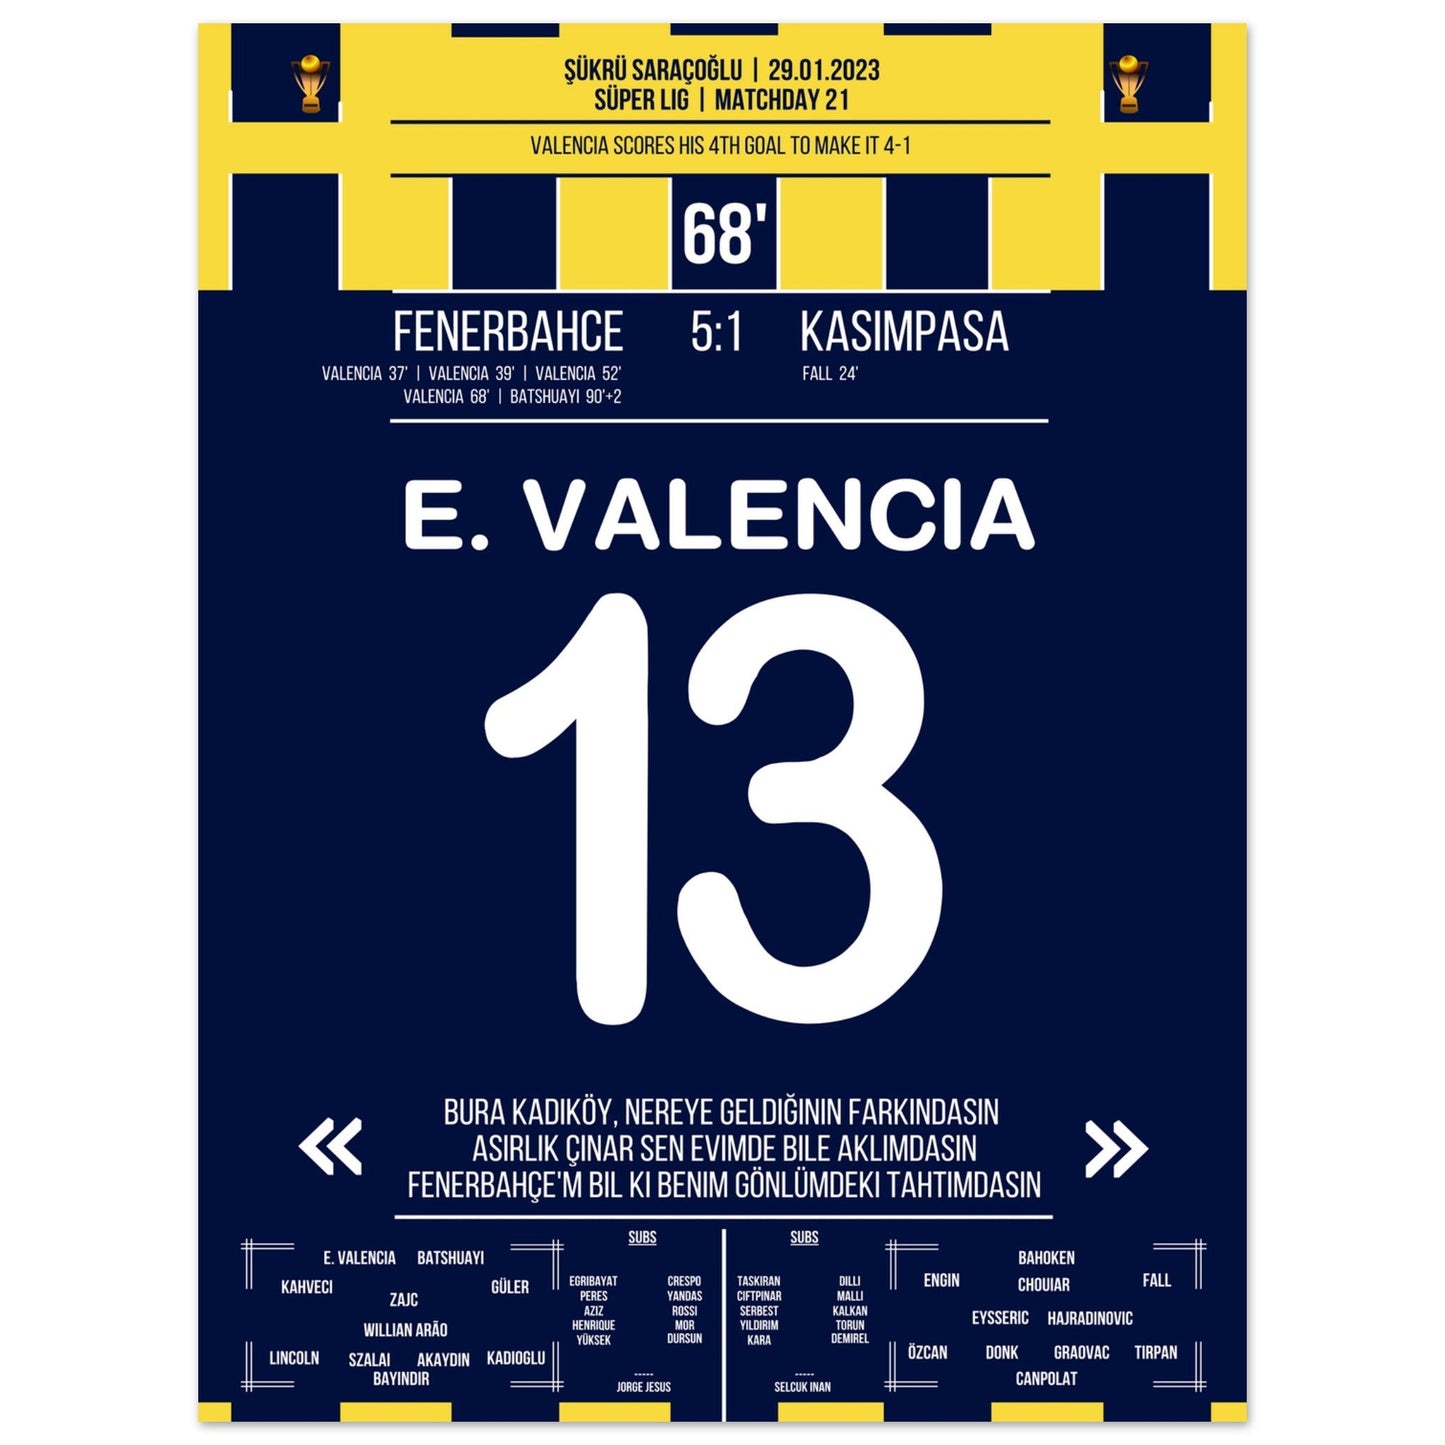 Viererpack von Enner Valencia gegen Kasimpasa in 2023